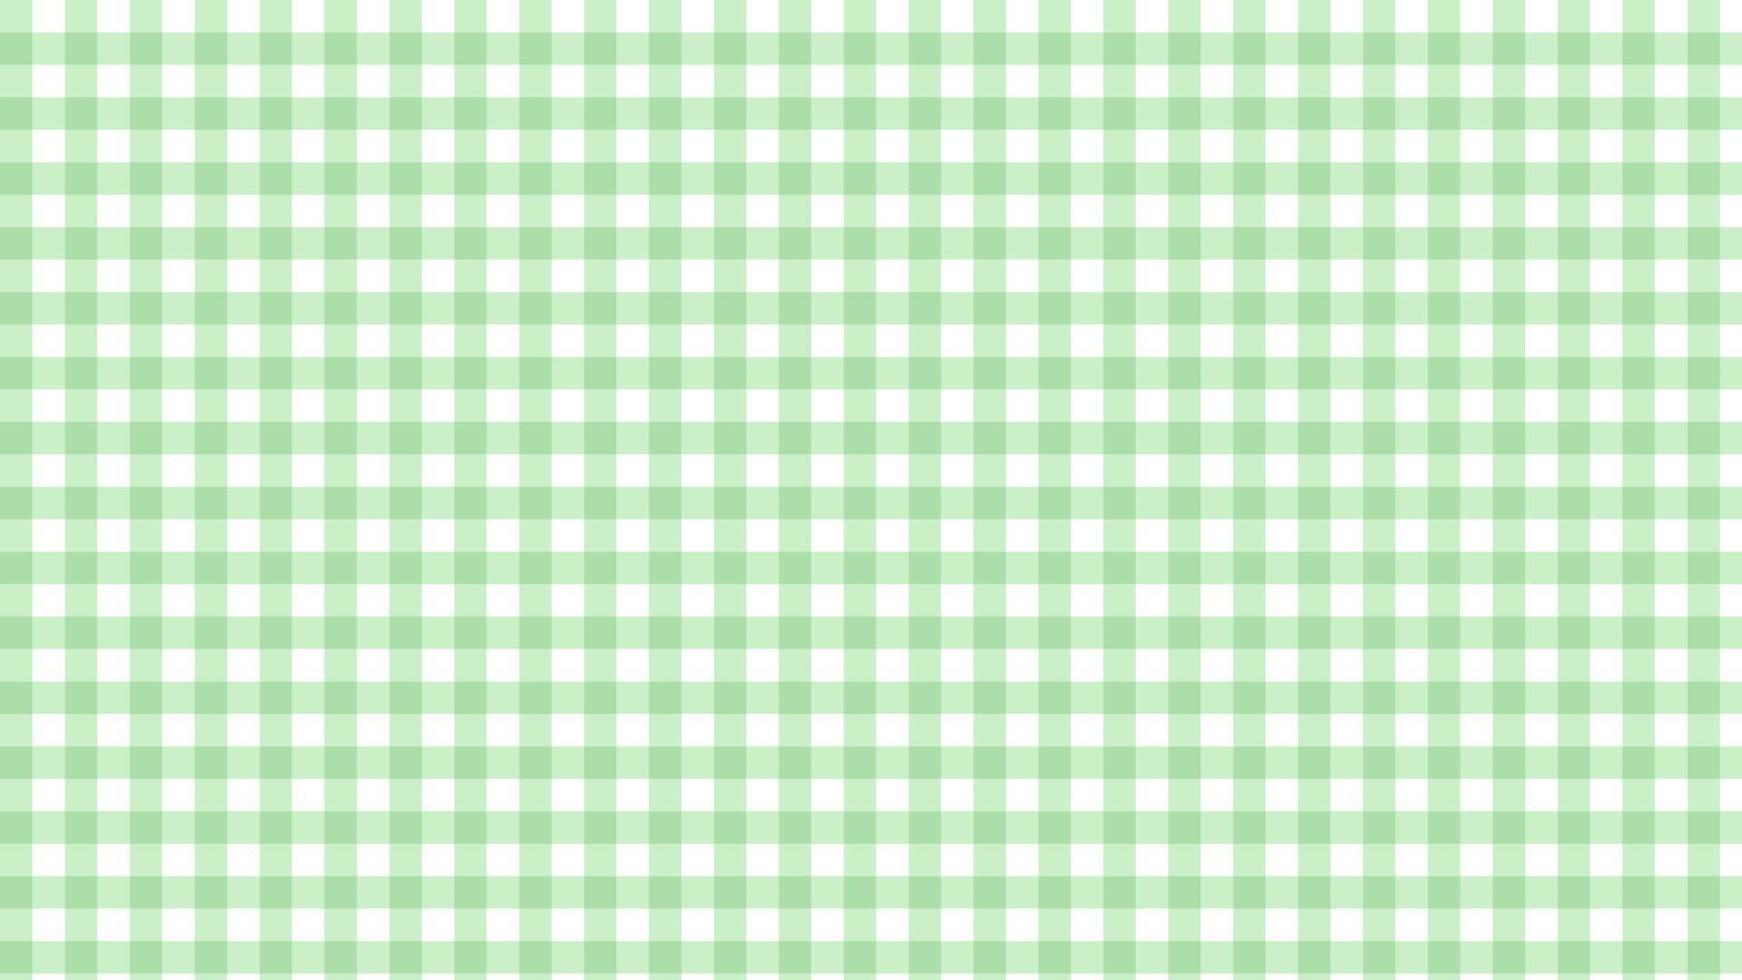 kleiner grüner Gingham, Checkerboard-Ästhetik-Checker-Hintergrundillustration, perfekt für Tapete, Hintergrund, Postkarte, Hintergrund vektor